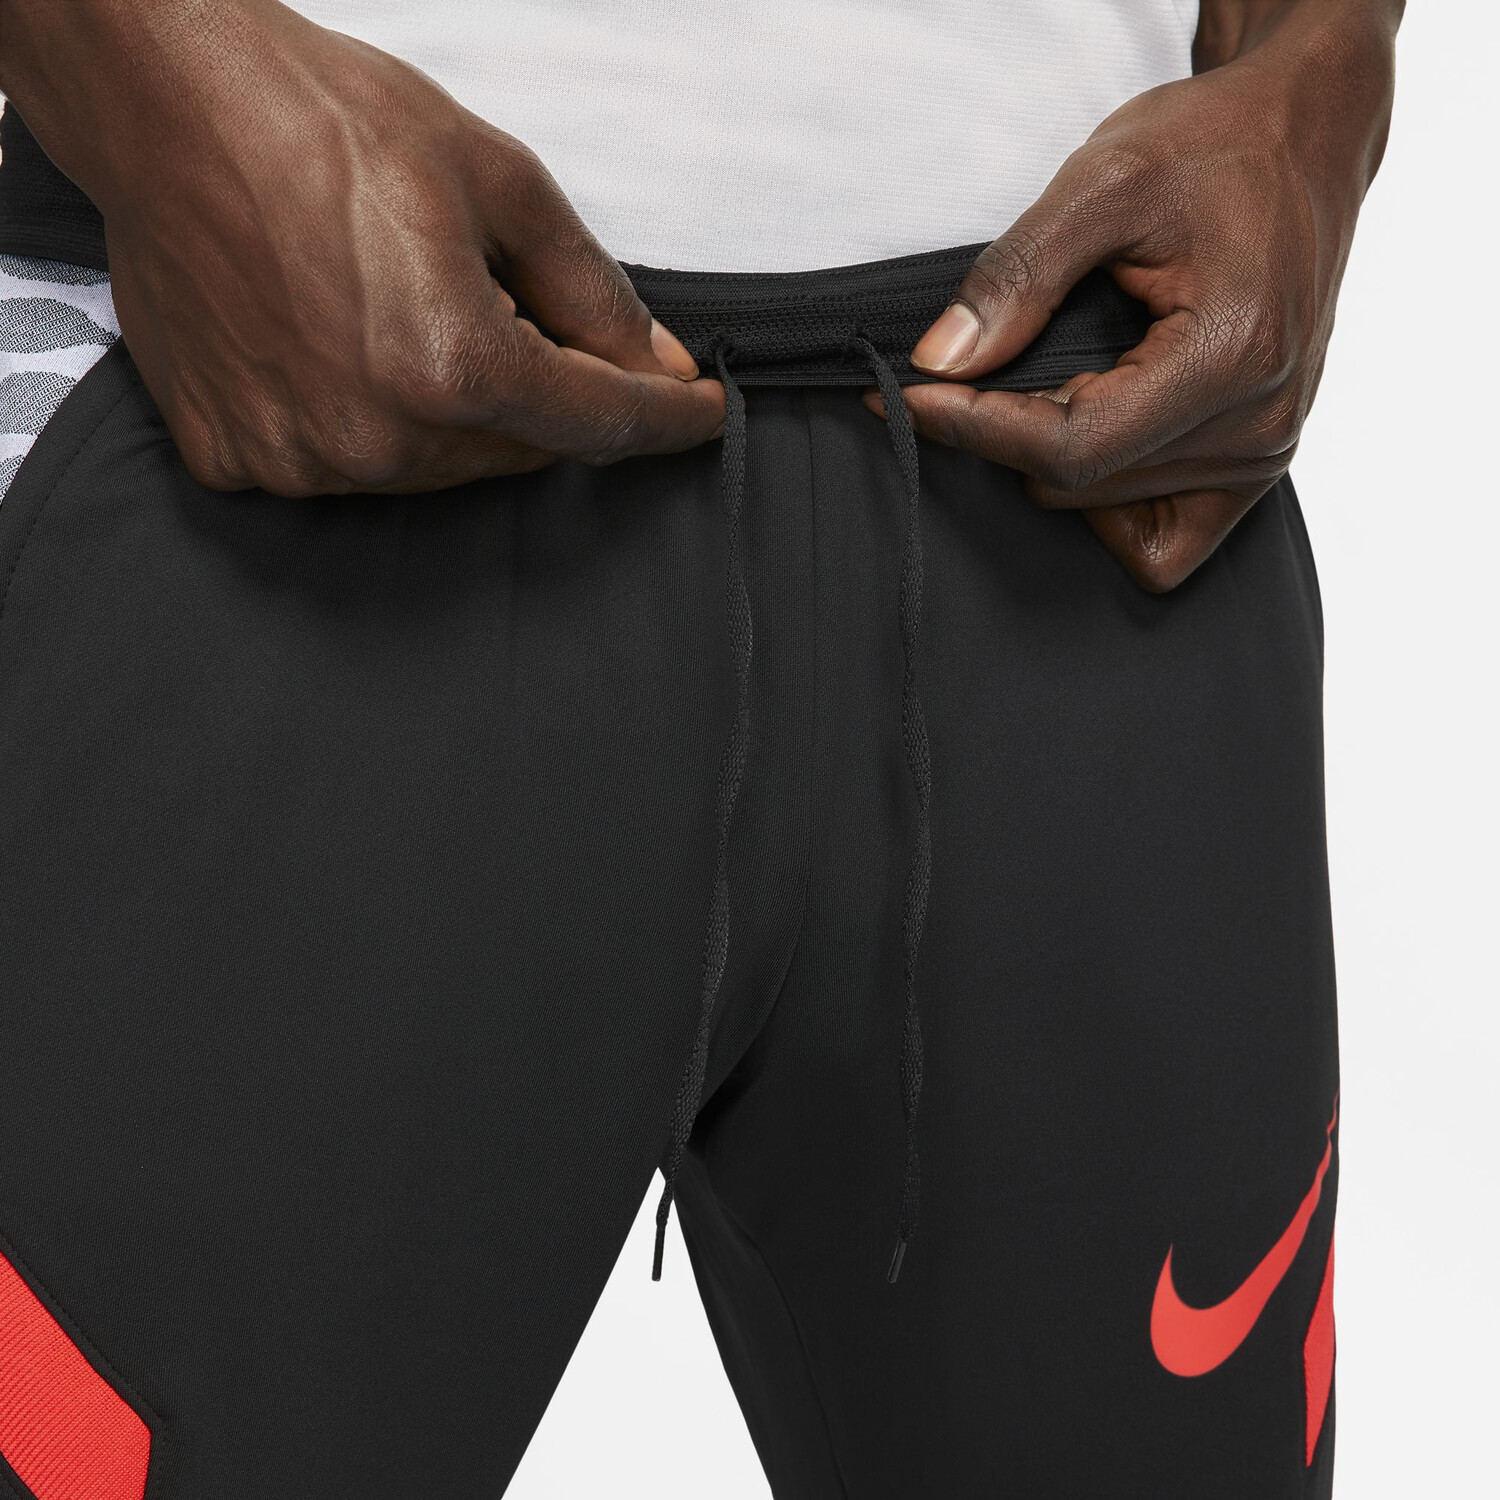 Pantalon survêtement Nike Strike noir rouge sur